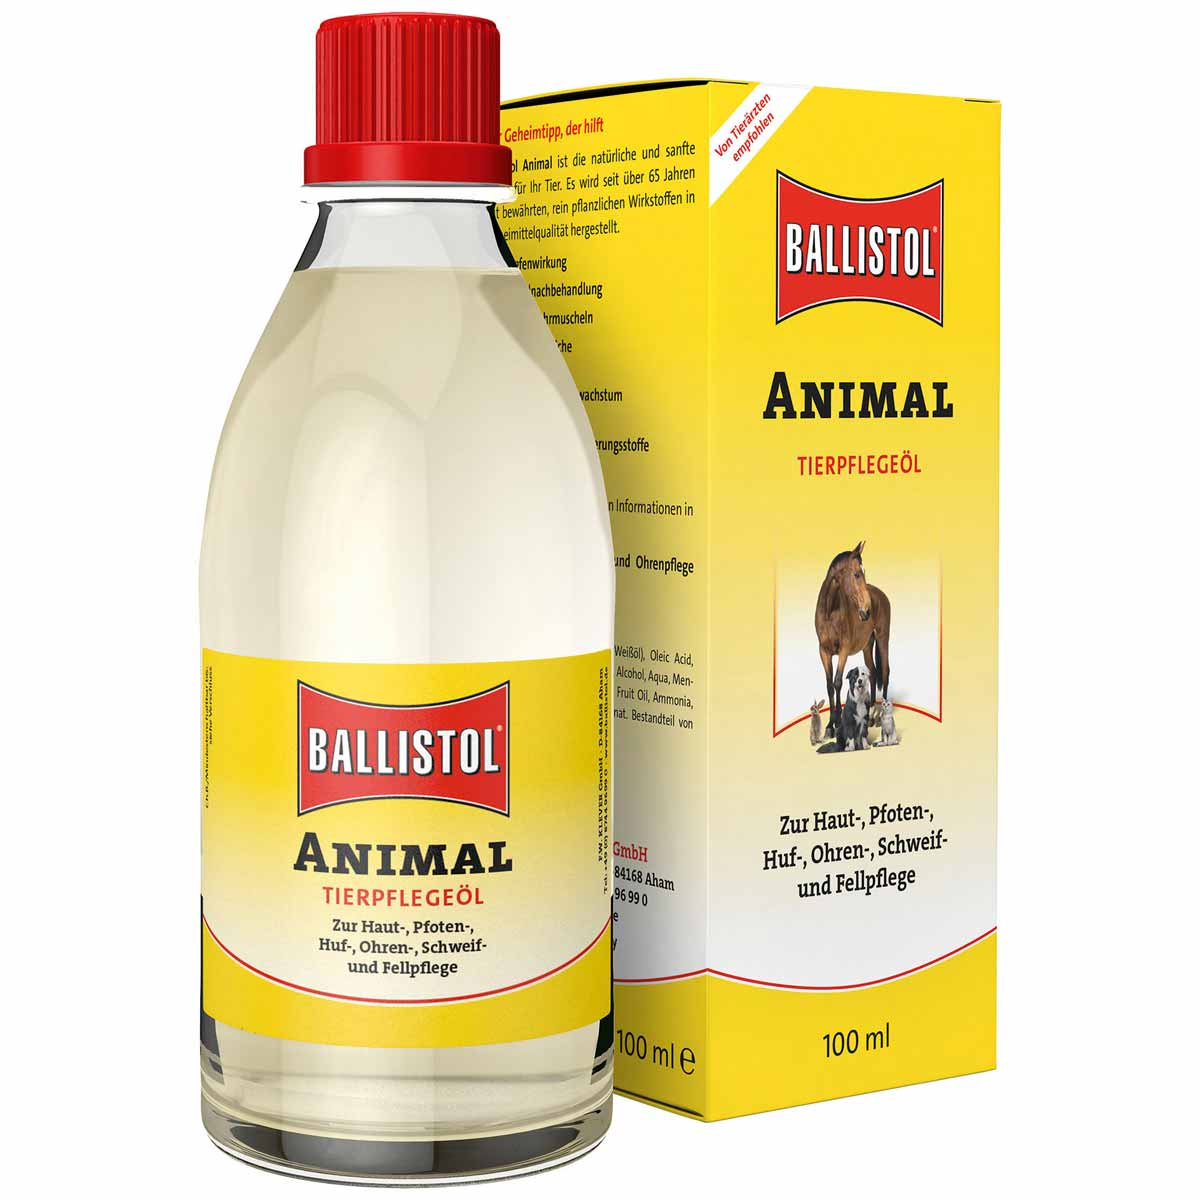 BALLISTOL Animal Tierpflege-Öl 100 ml